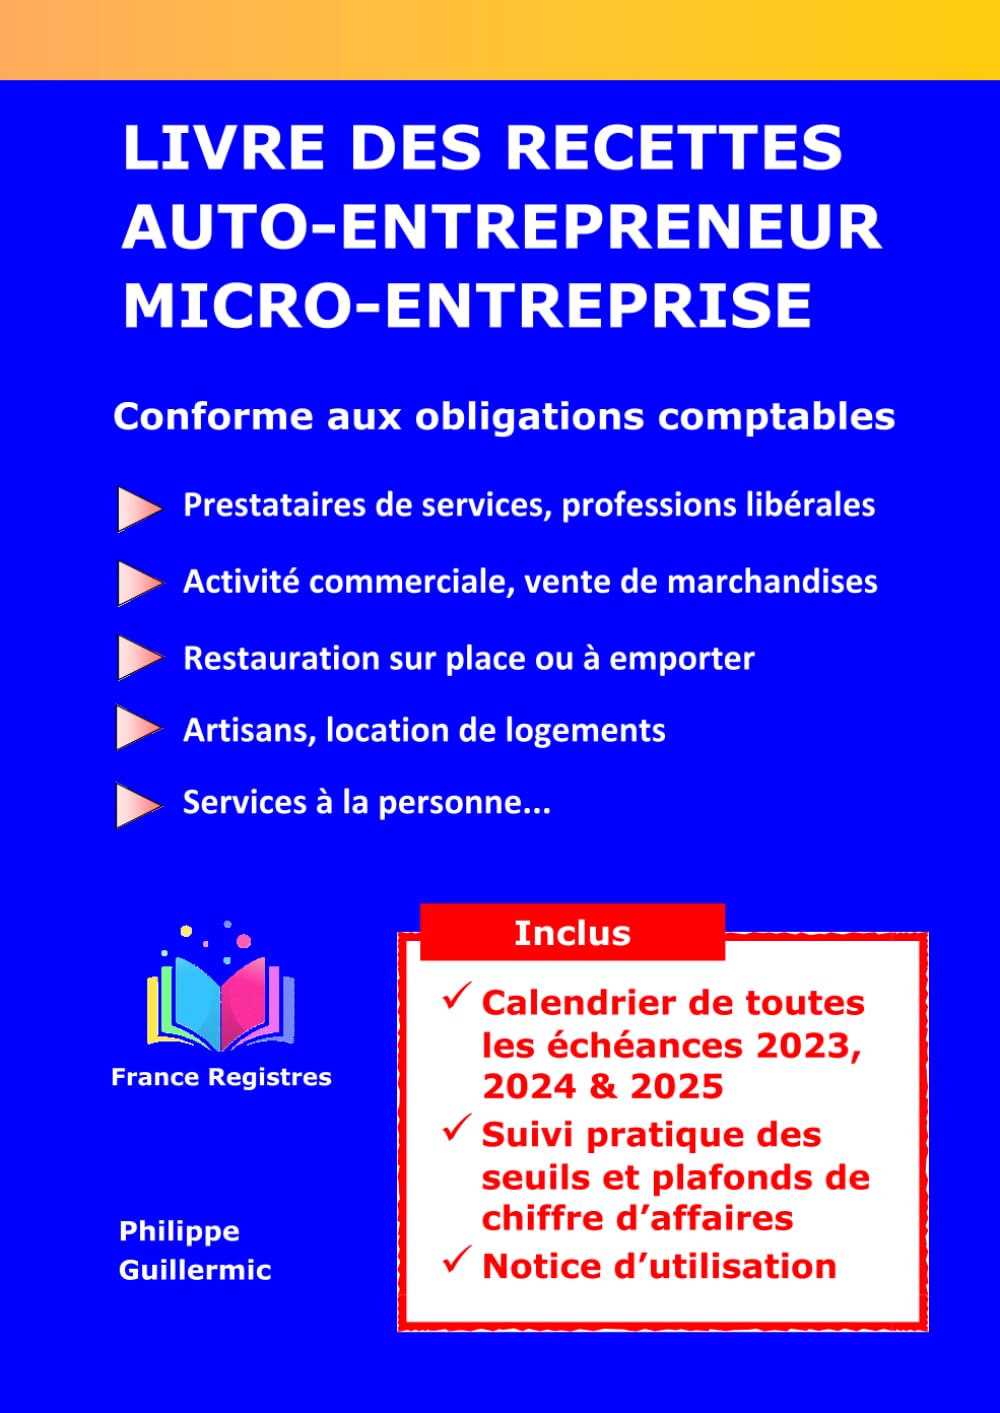 Livre des recettes Auto-entrepreneur et Micro-entreprise – France